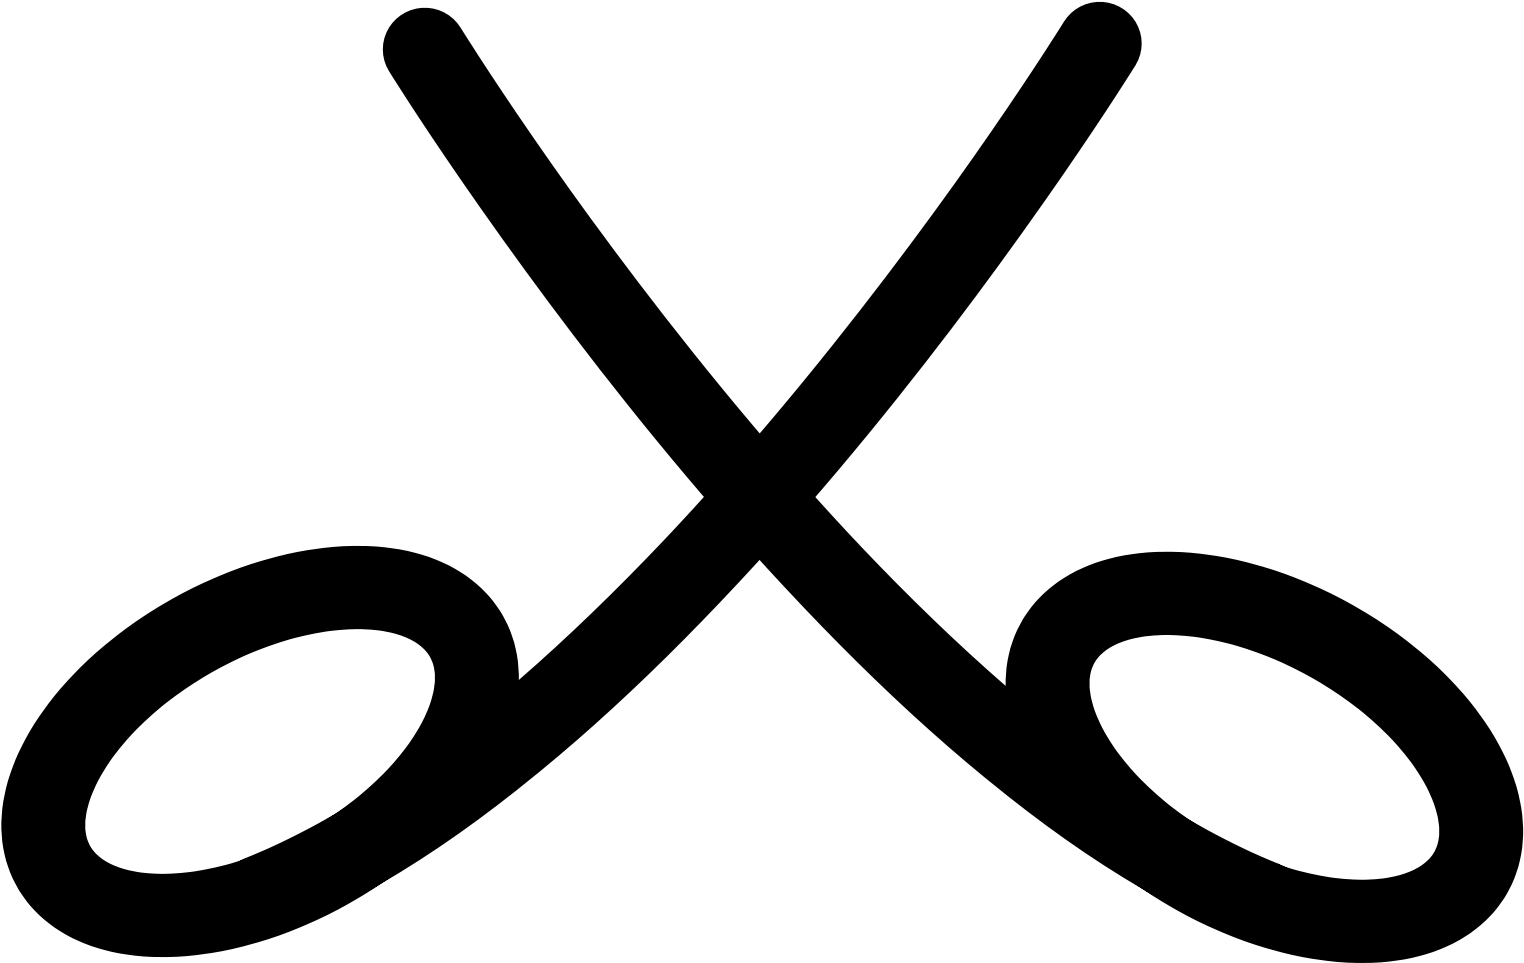 Open - Crossed Swords Battle Symbol (2000x1538)